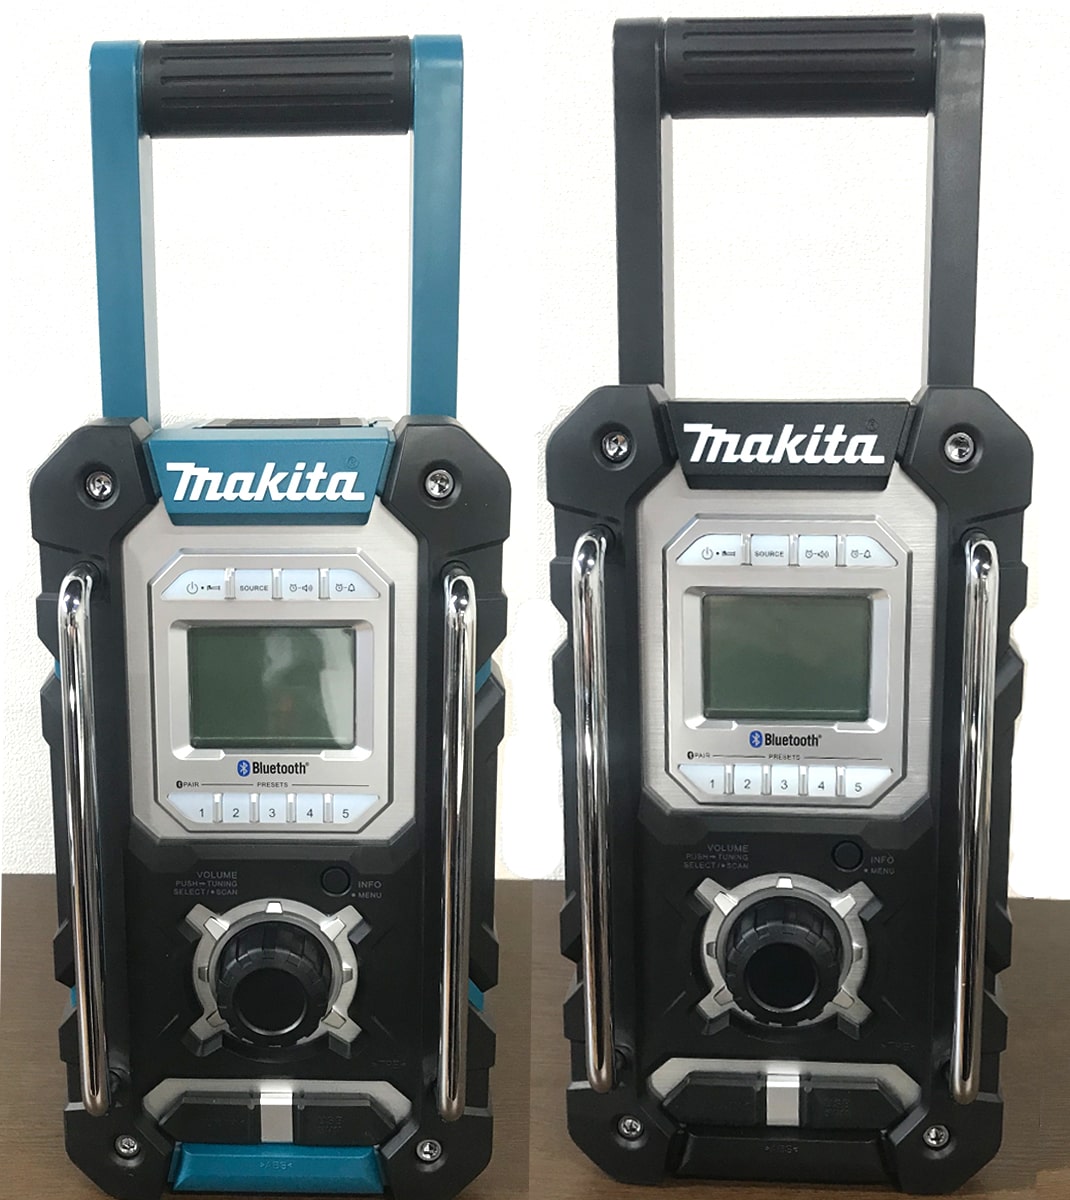 マキタ makita 充電式ラジオMR108マキタラジオ Bluetooth - 工具、DIY用品